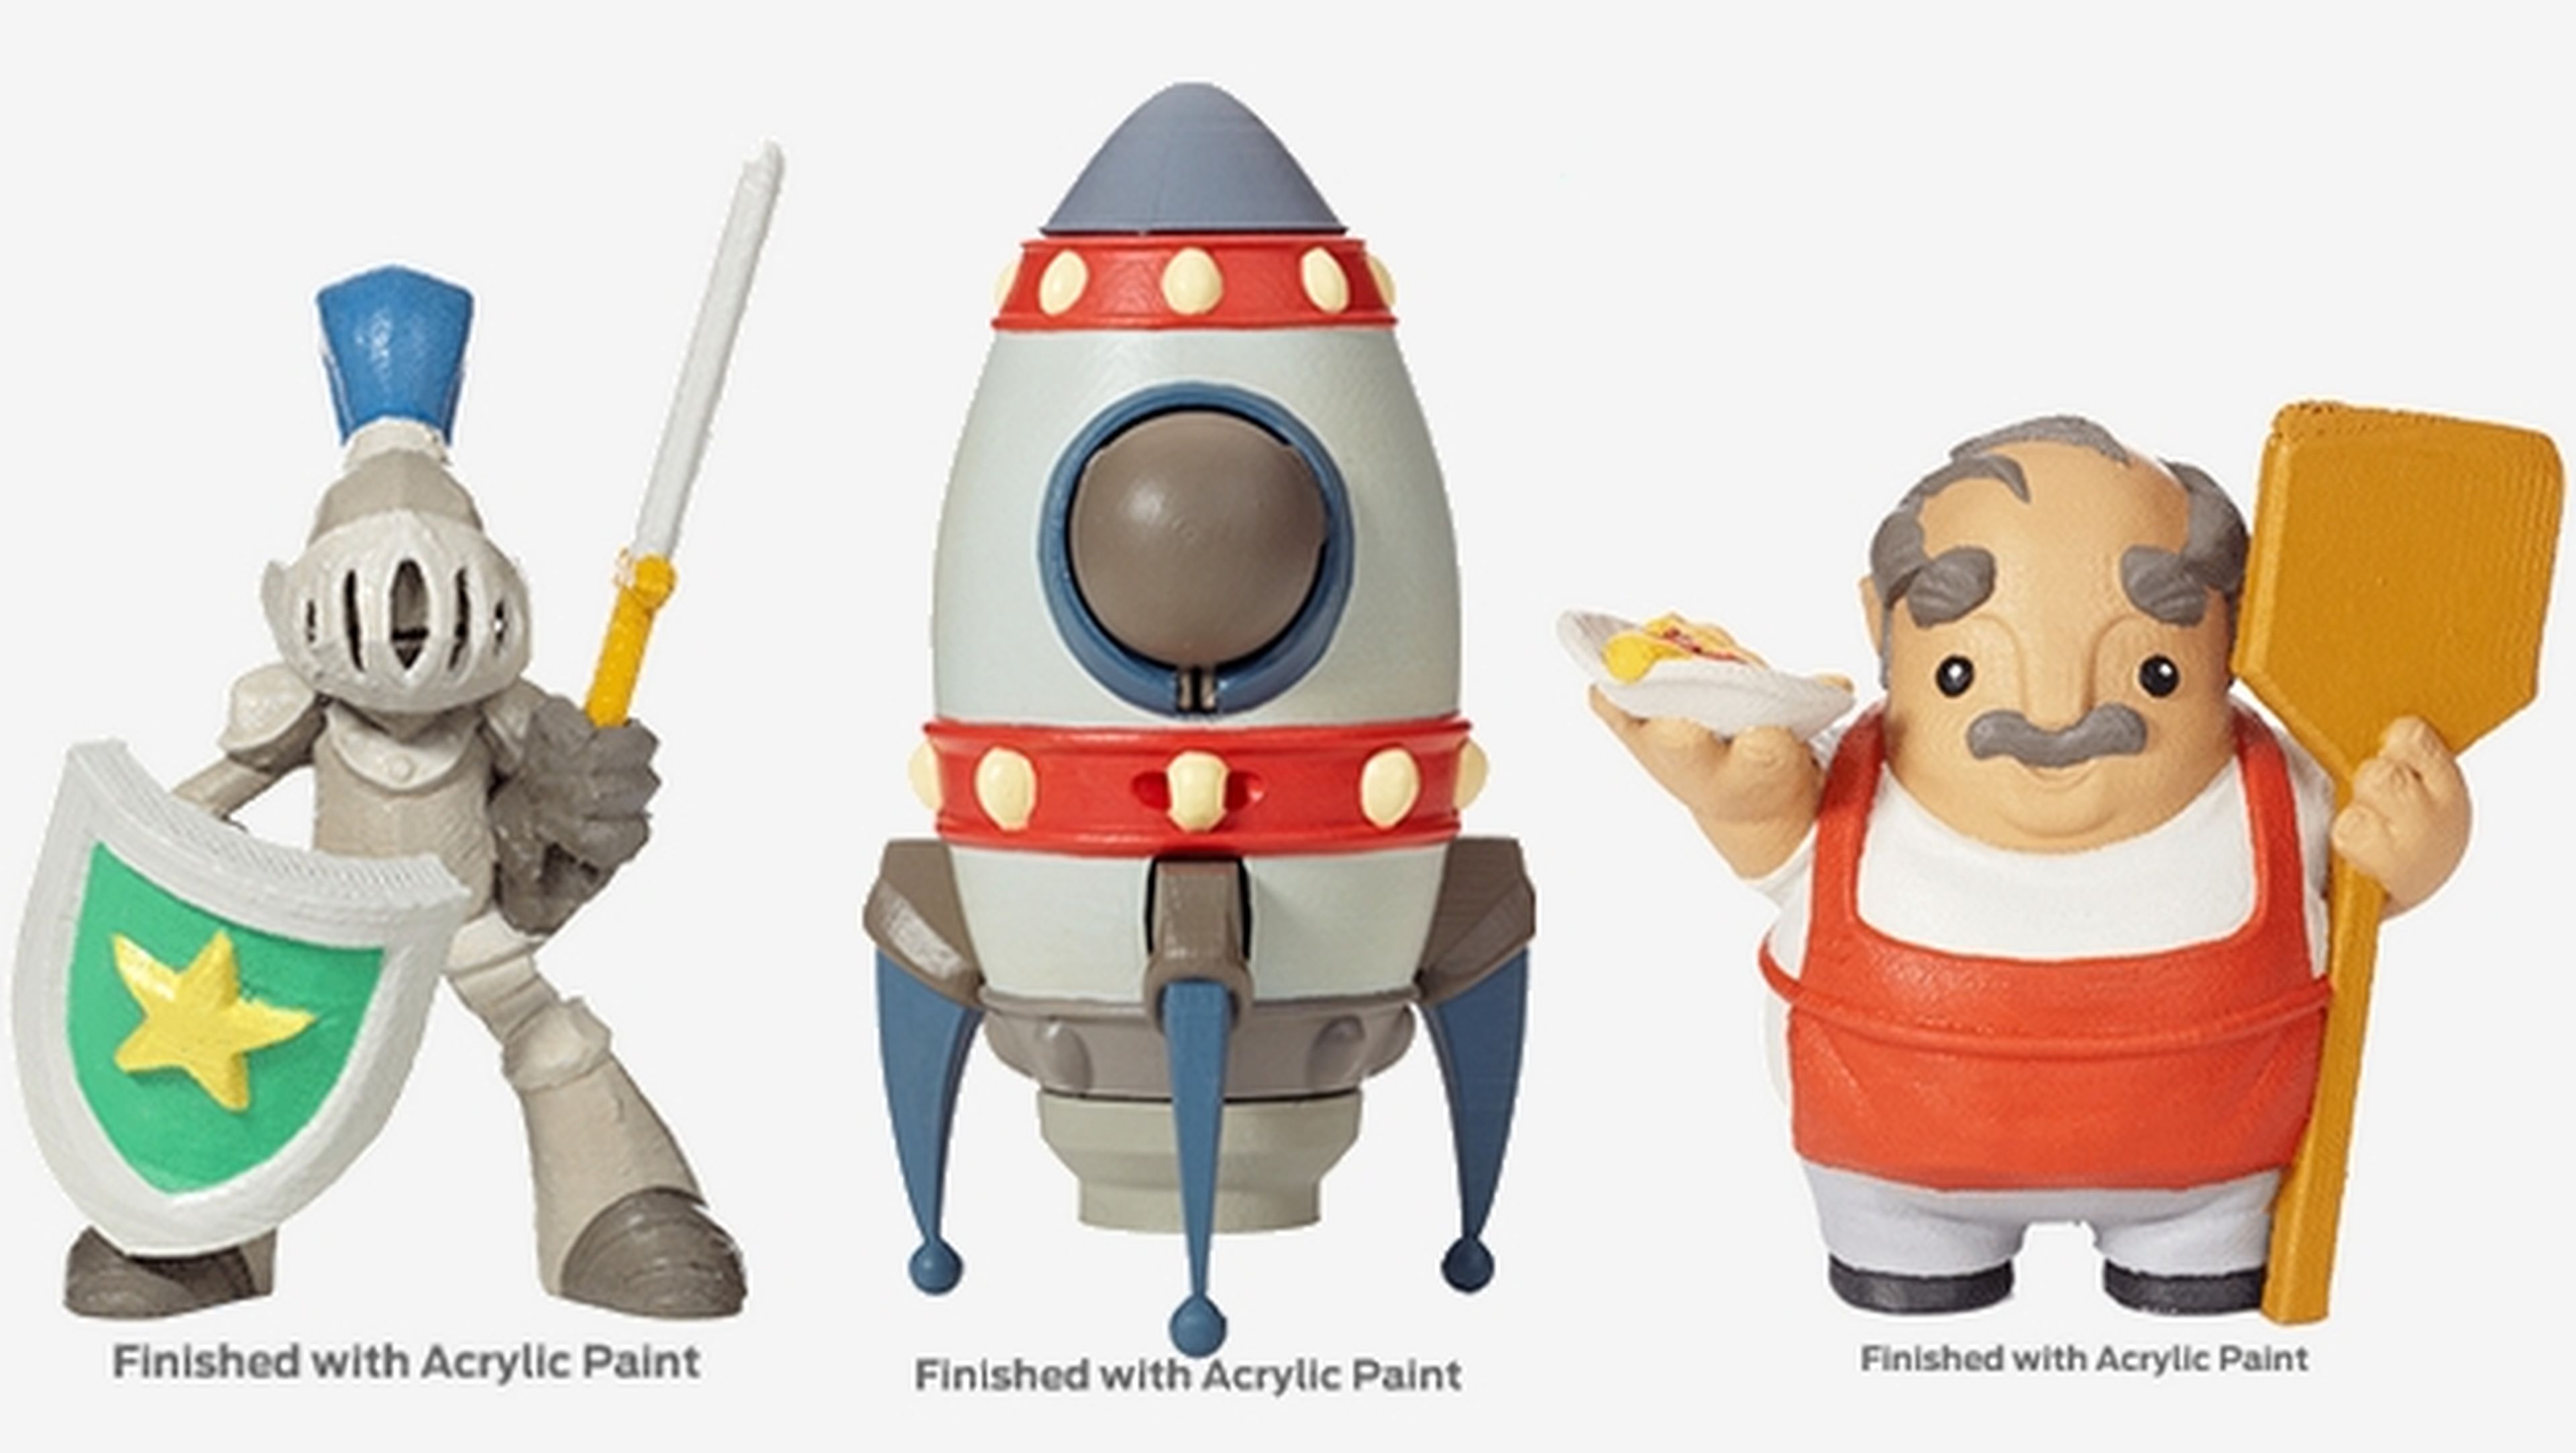 MakerBot Digital Store, compra diseños de juguetes imprimibles en 3D